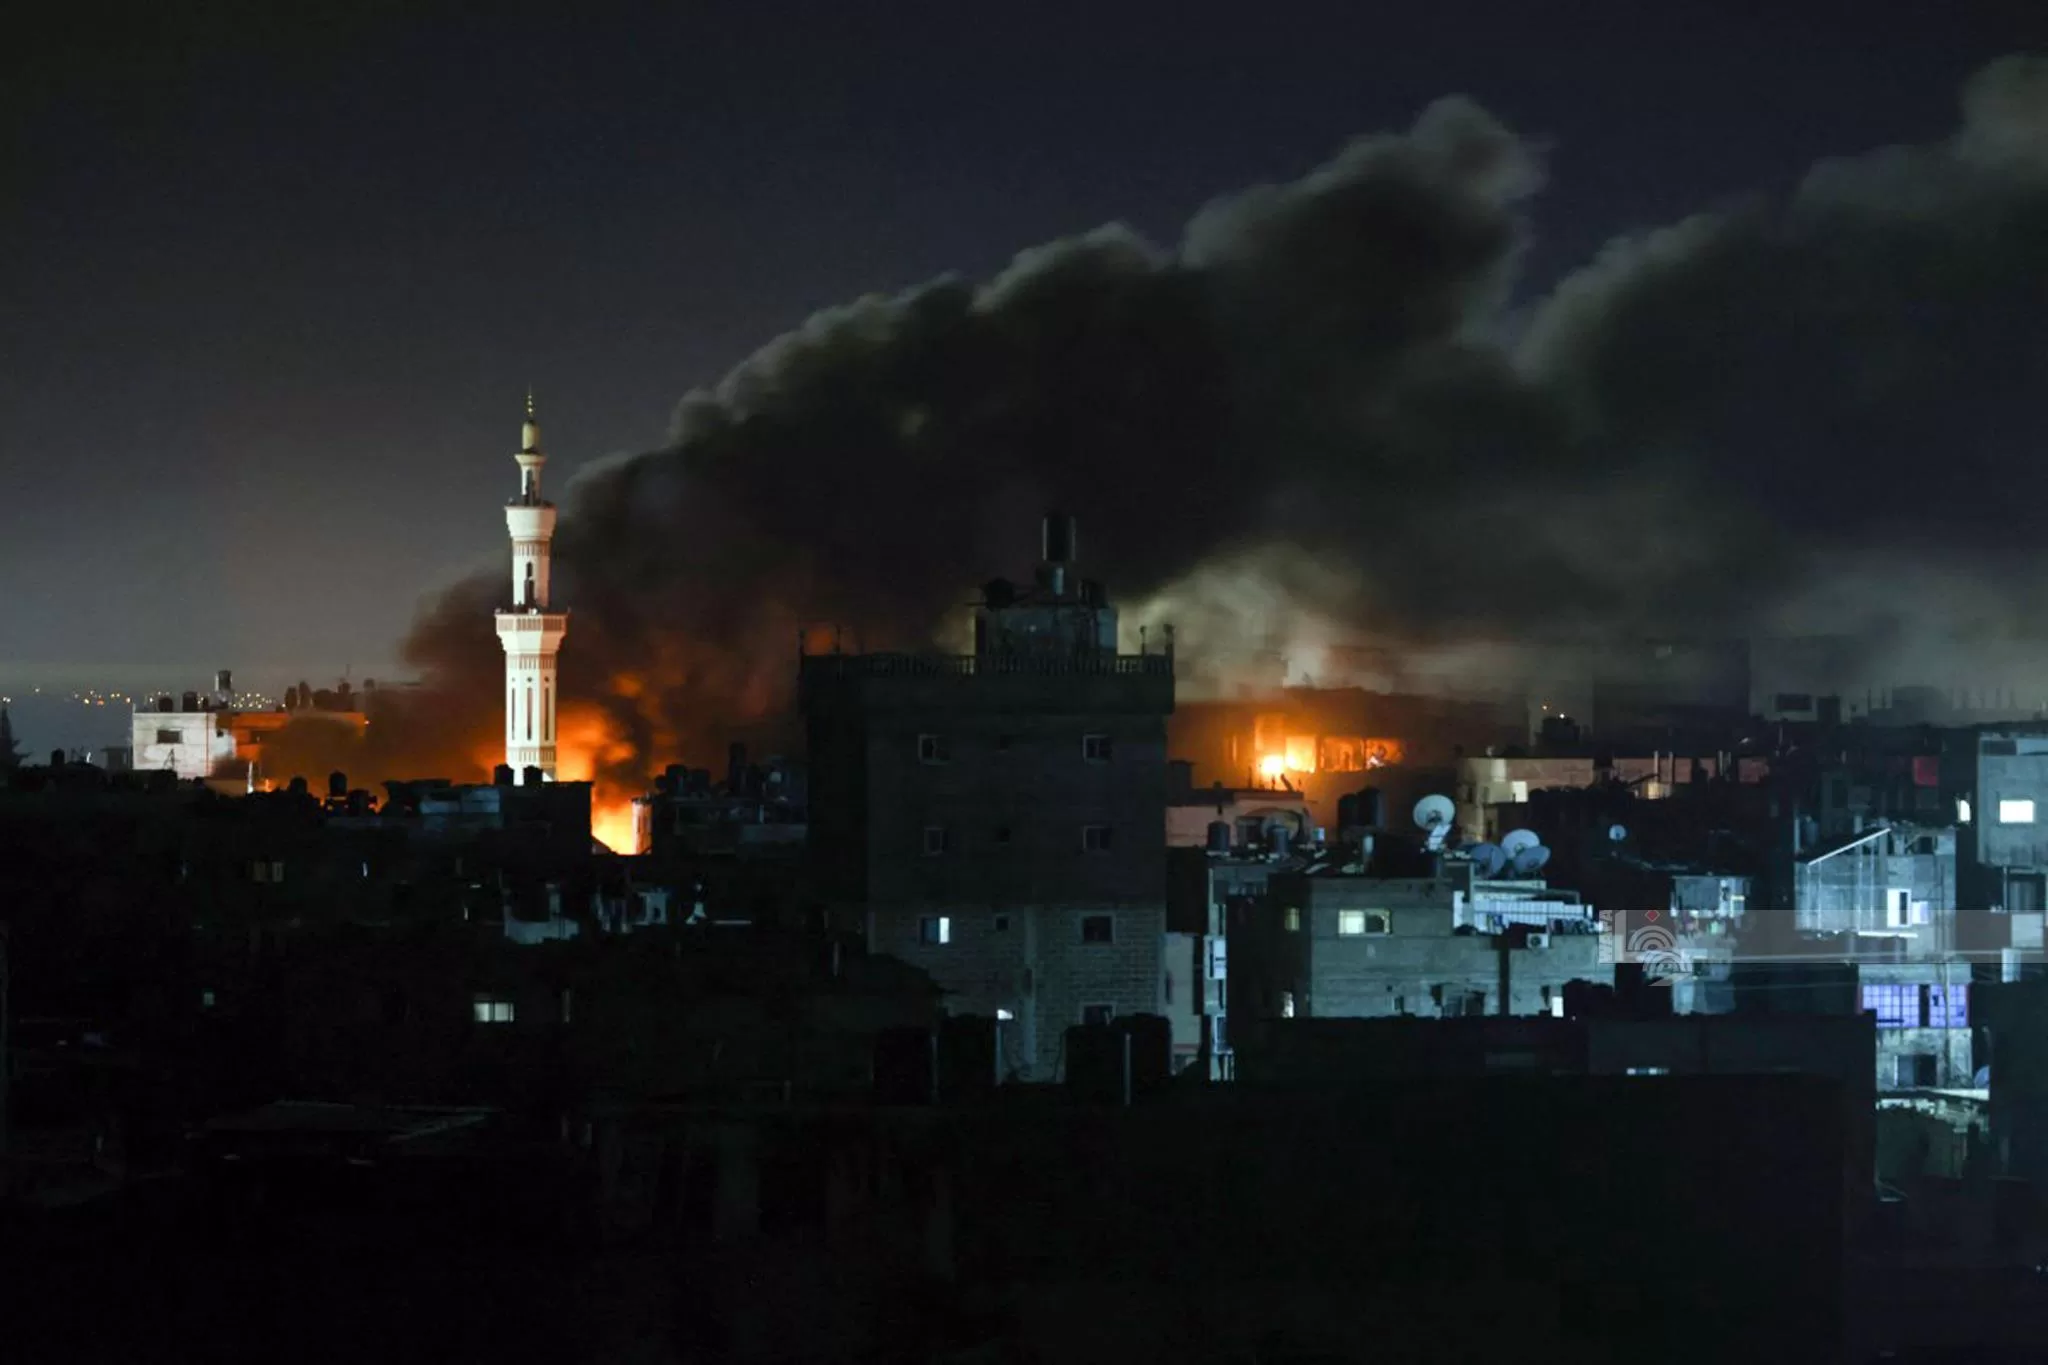 وسقط العديد من المواطنين بين الشهداء والجرحى جراء القصف الإسرائيلي المستمر على قطاع غزة.